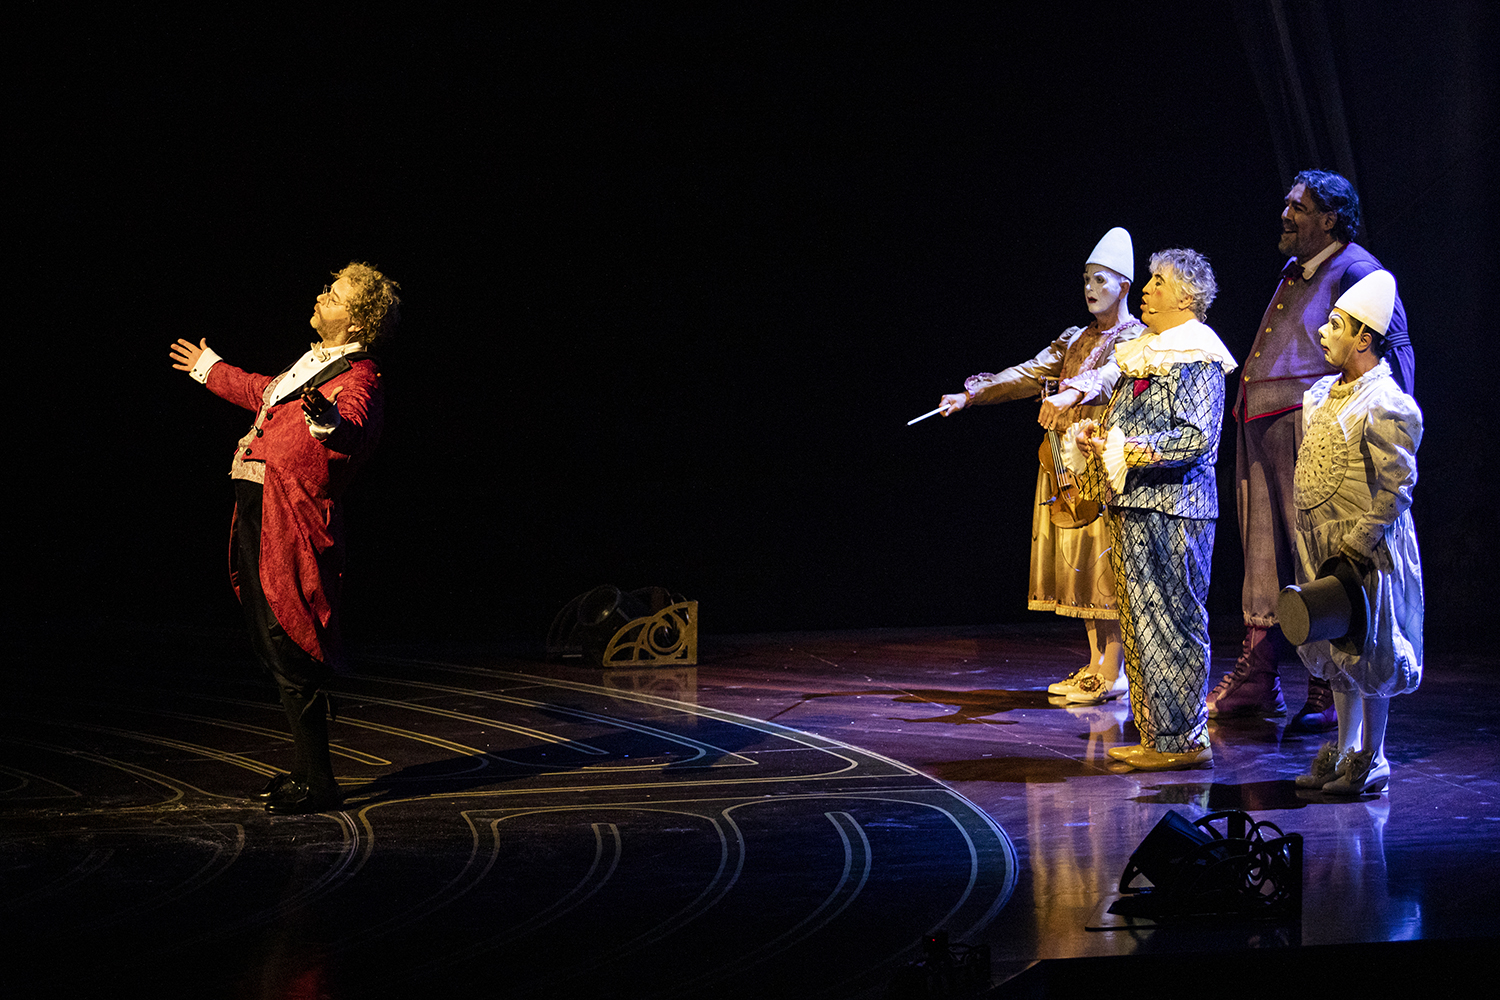 Cirque du Soleil vuelve a México con el espectacular show "Corteo" 3